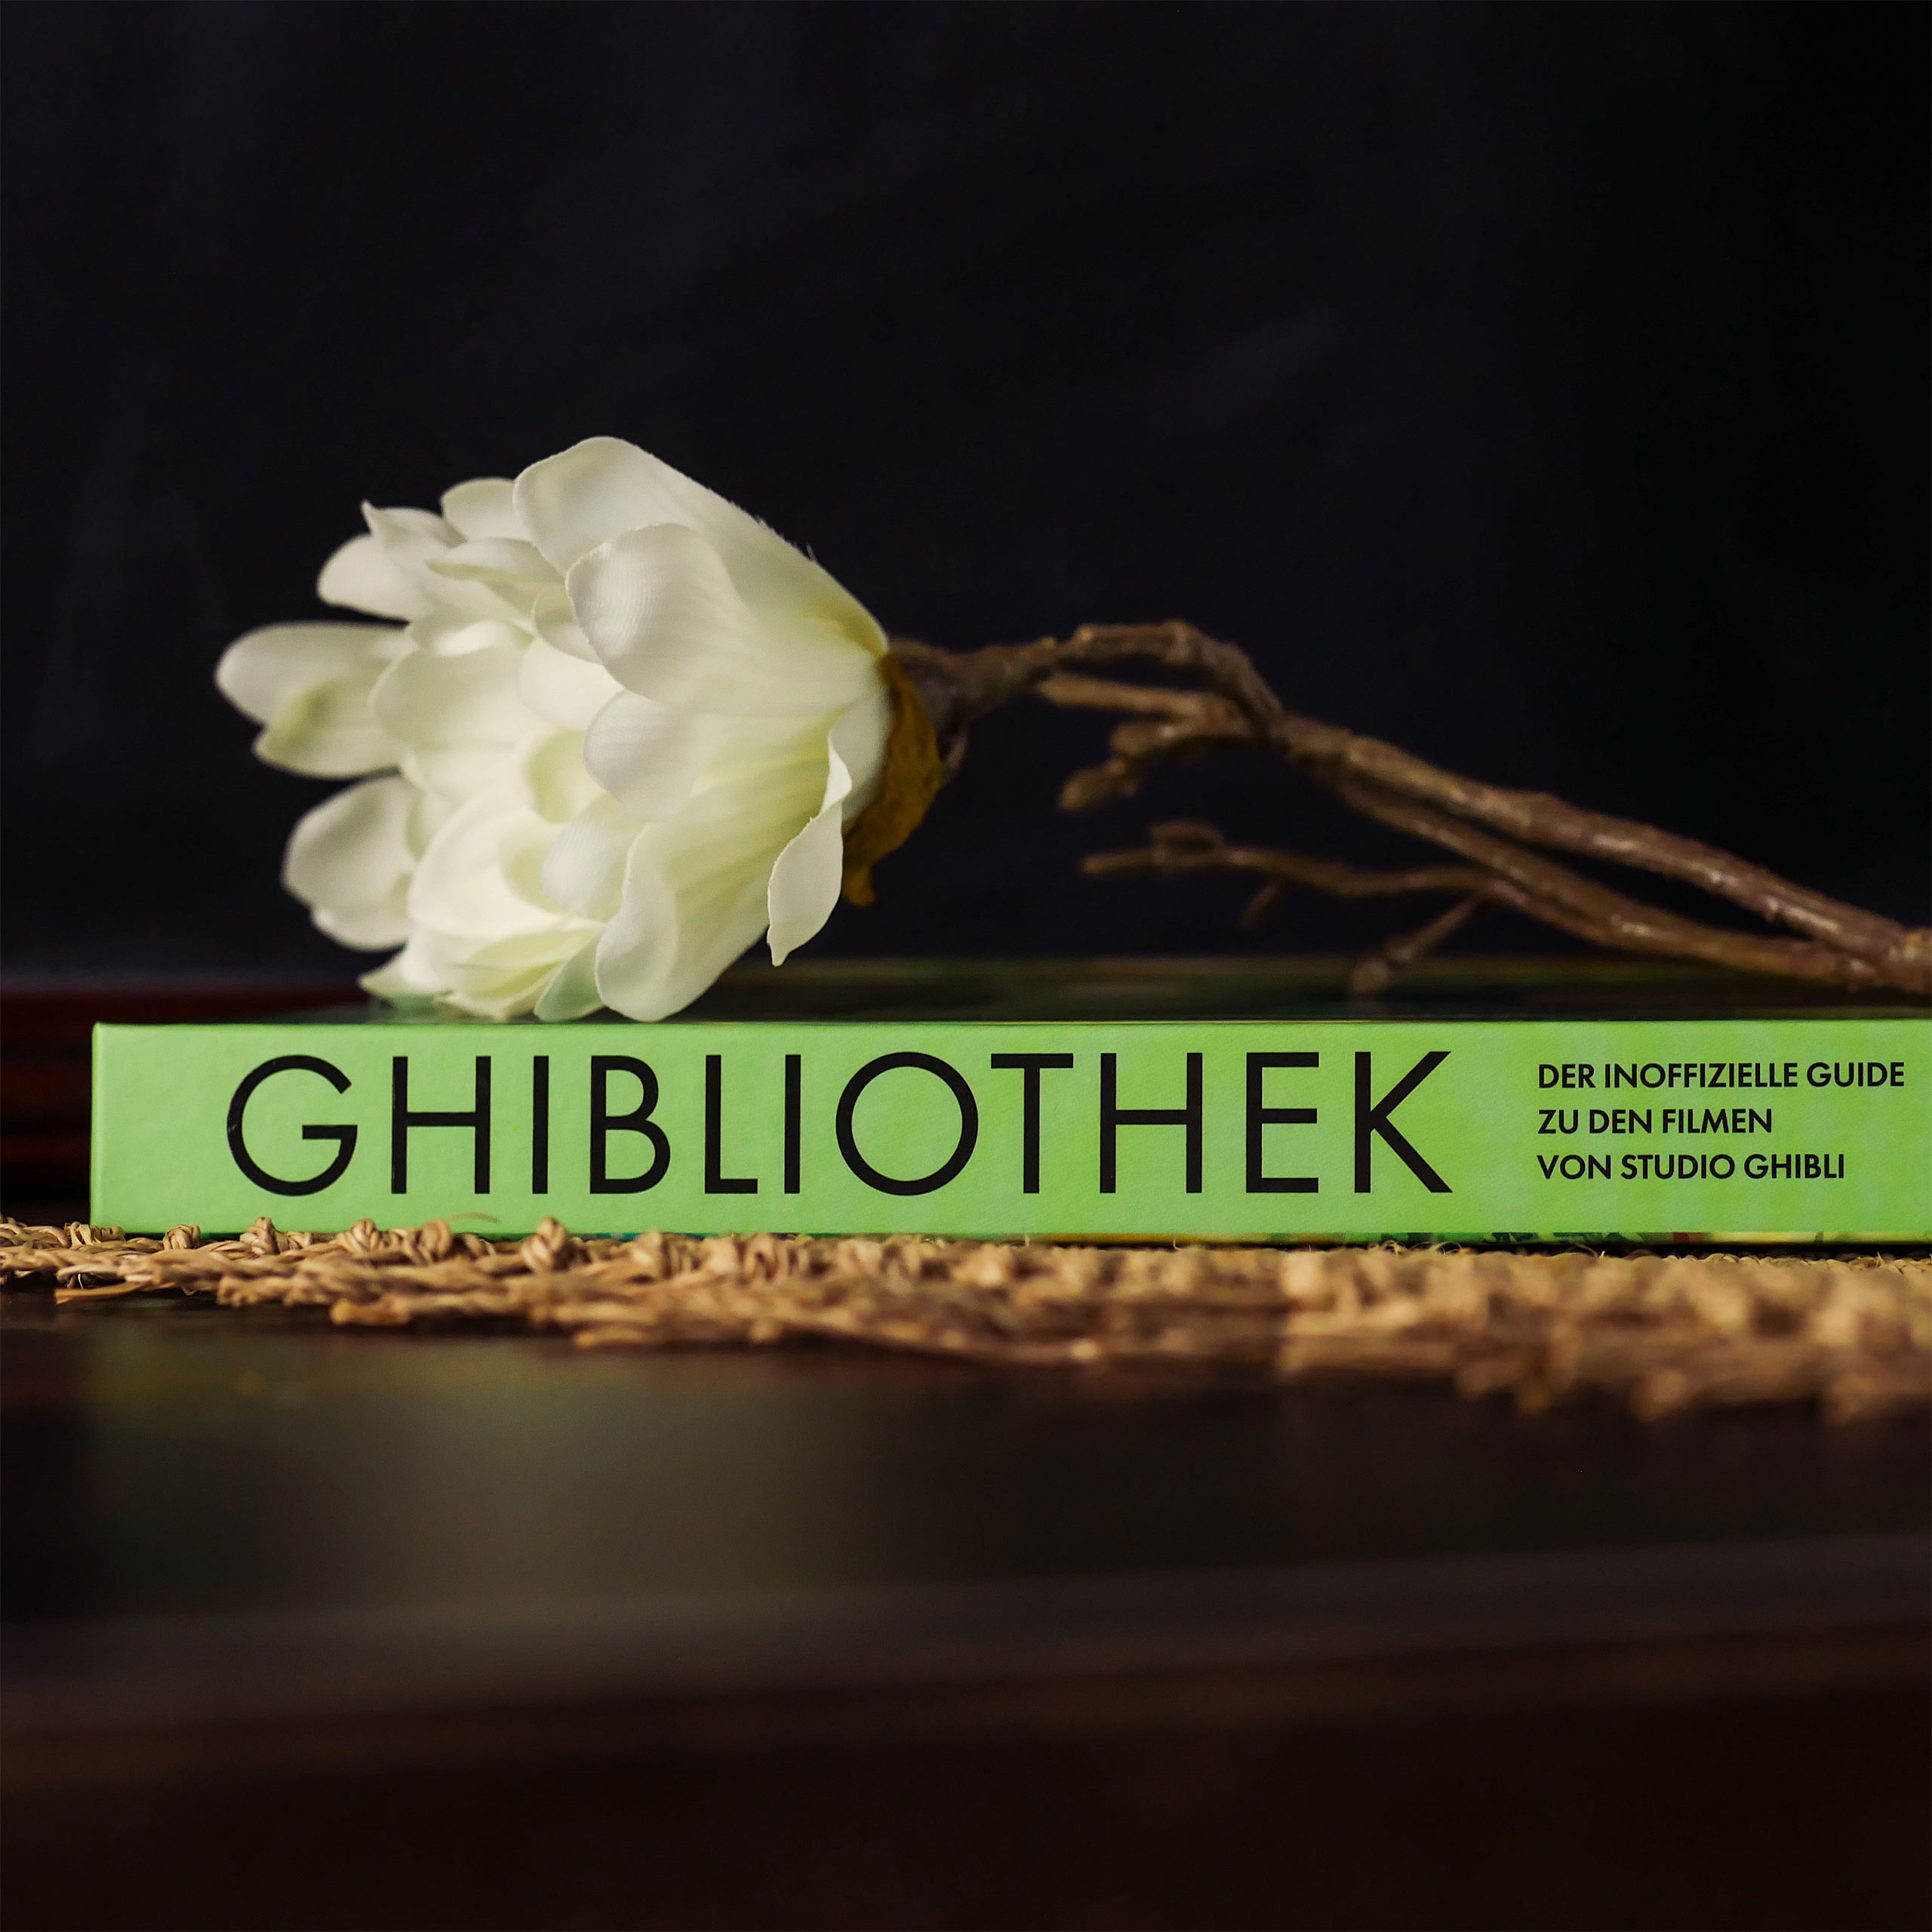 The Ghibliothek Artbook